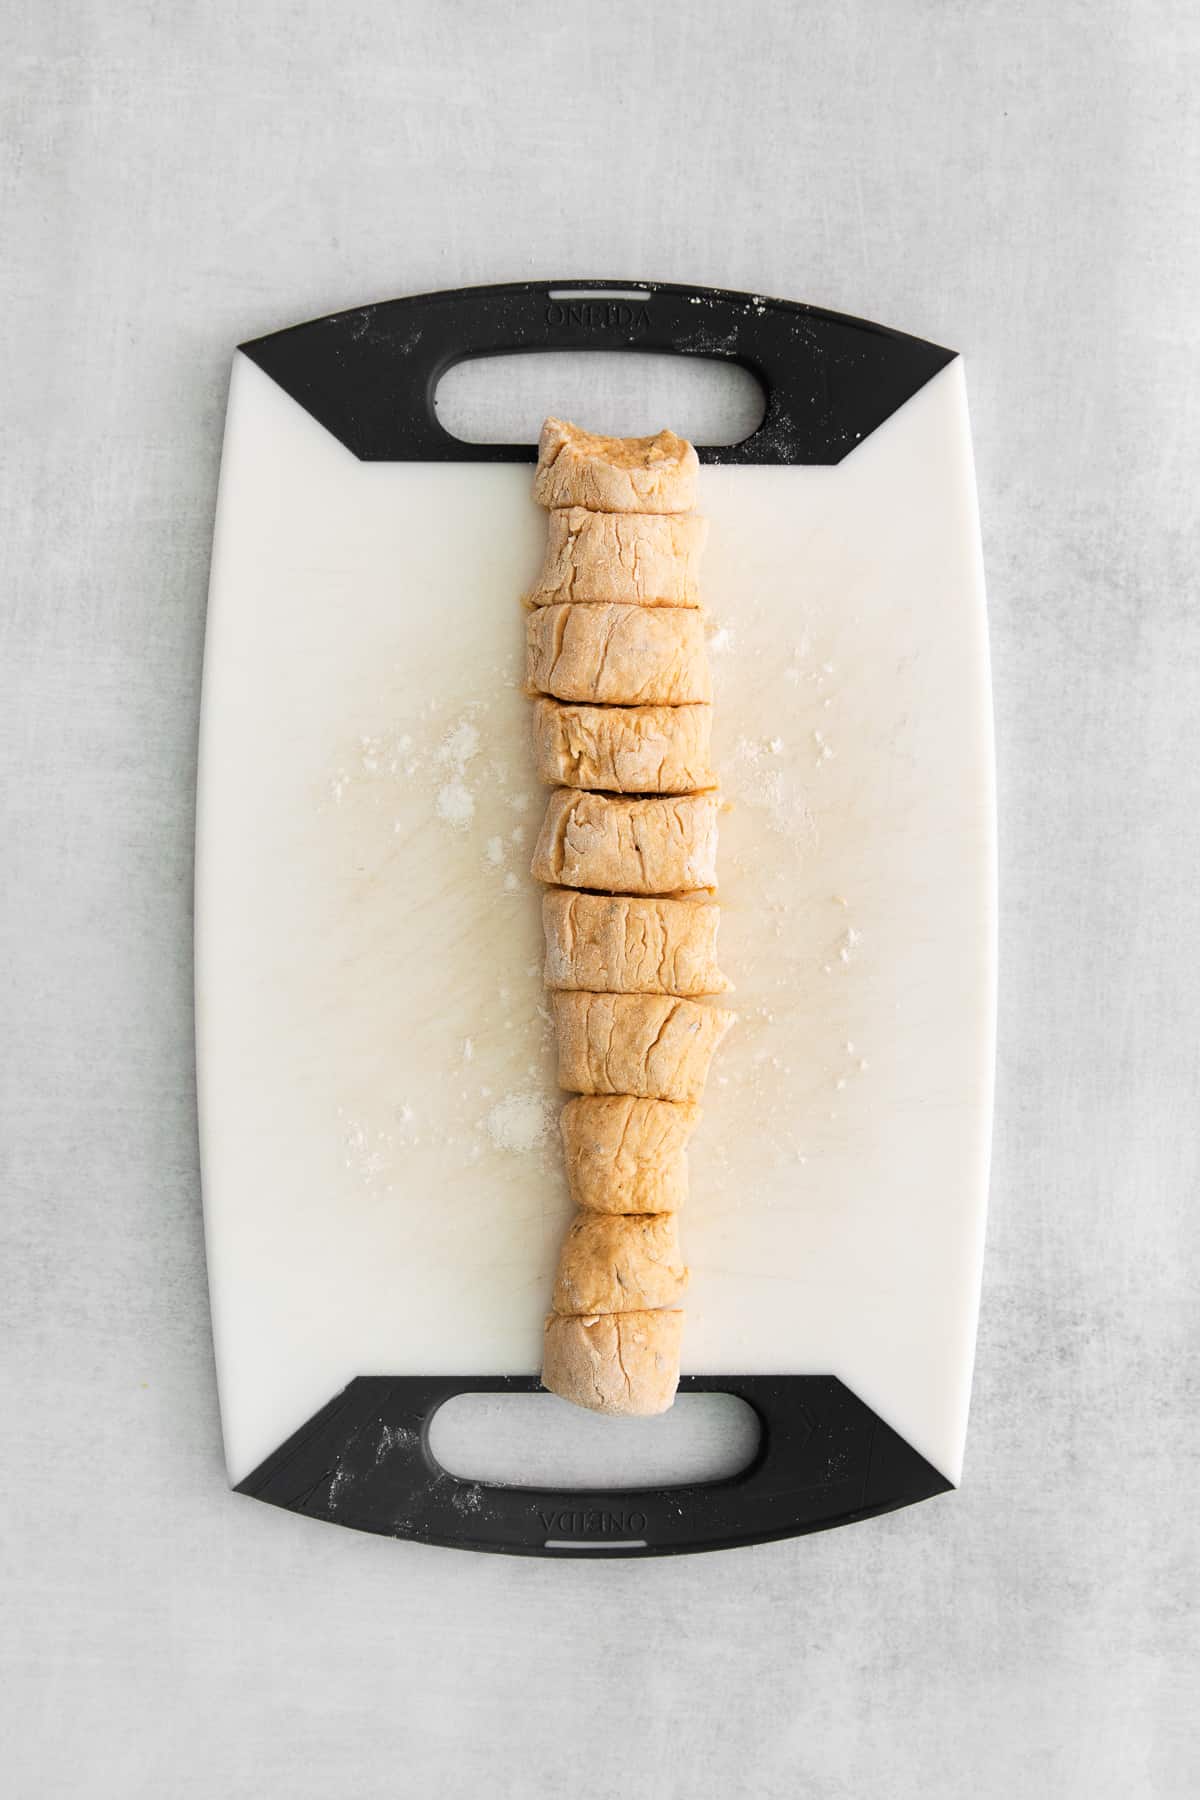 gnocchi dough sliced on cutting board.